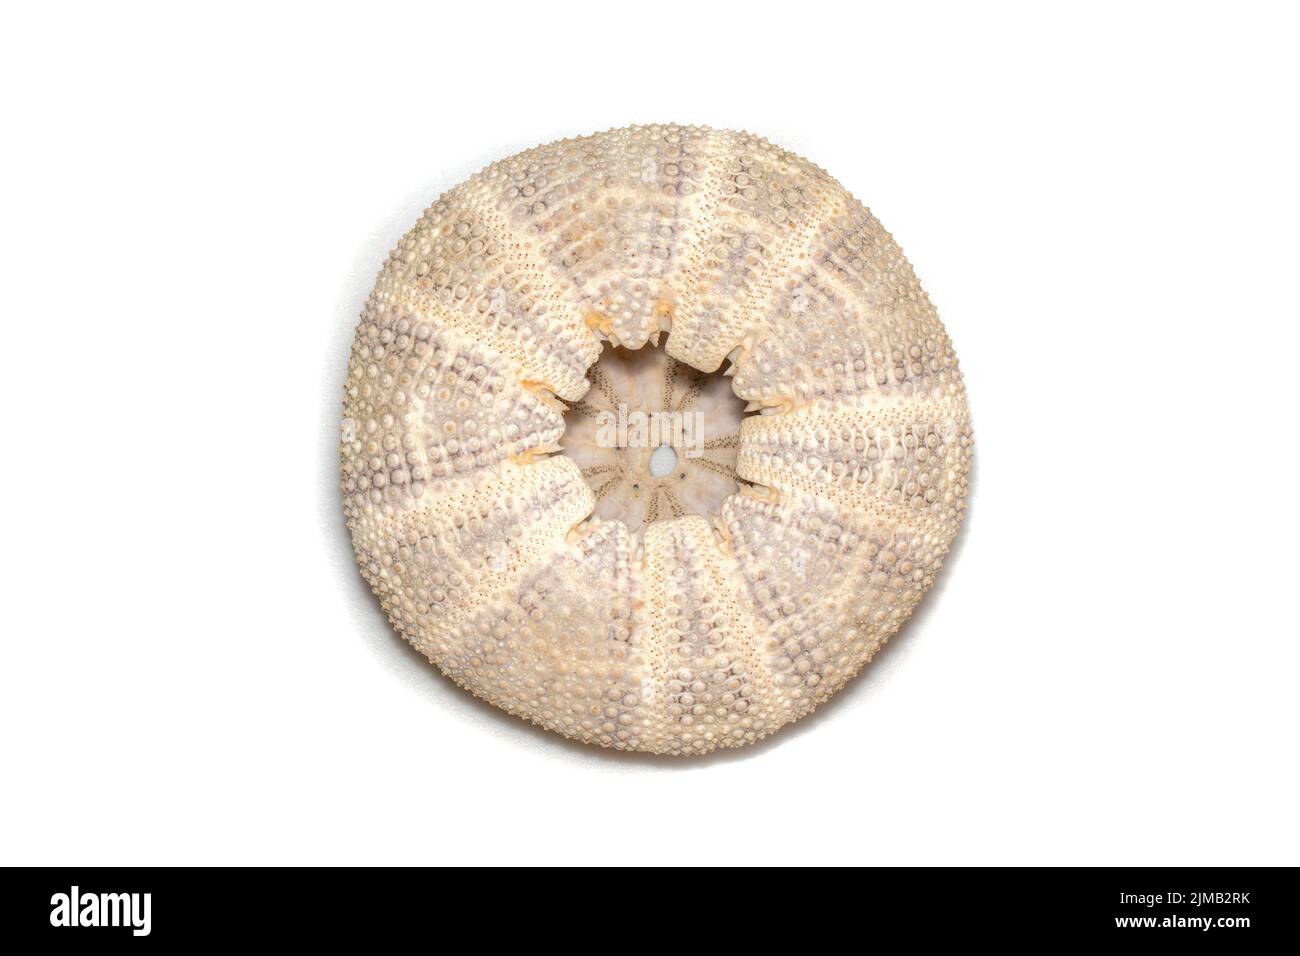 Immagine di Sea Urchin Shell su sfondo bianco. Conchiglie marine. Animali sottomarini. Foto Stock